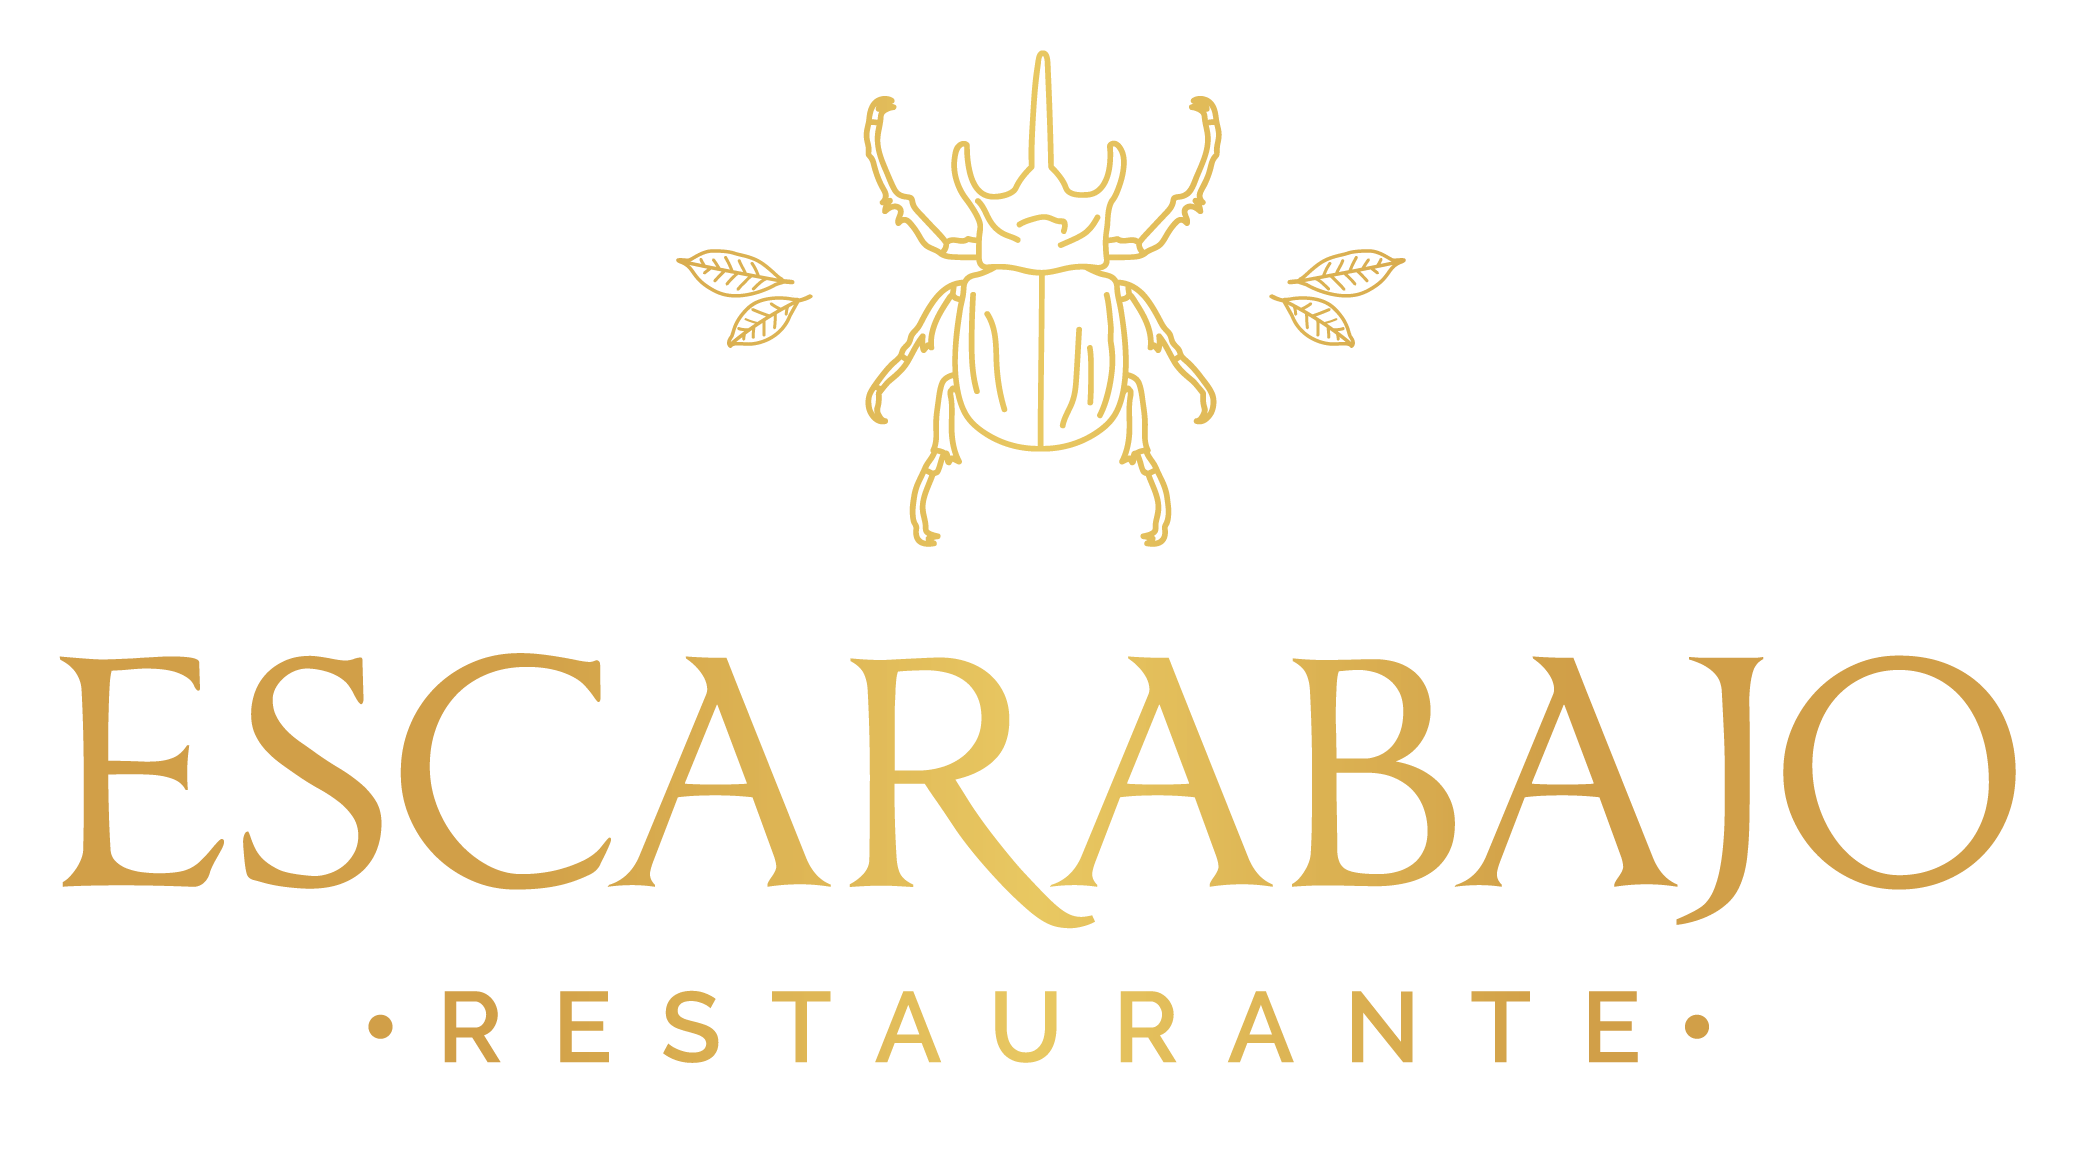 Escarabajo Restaurante